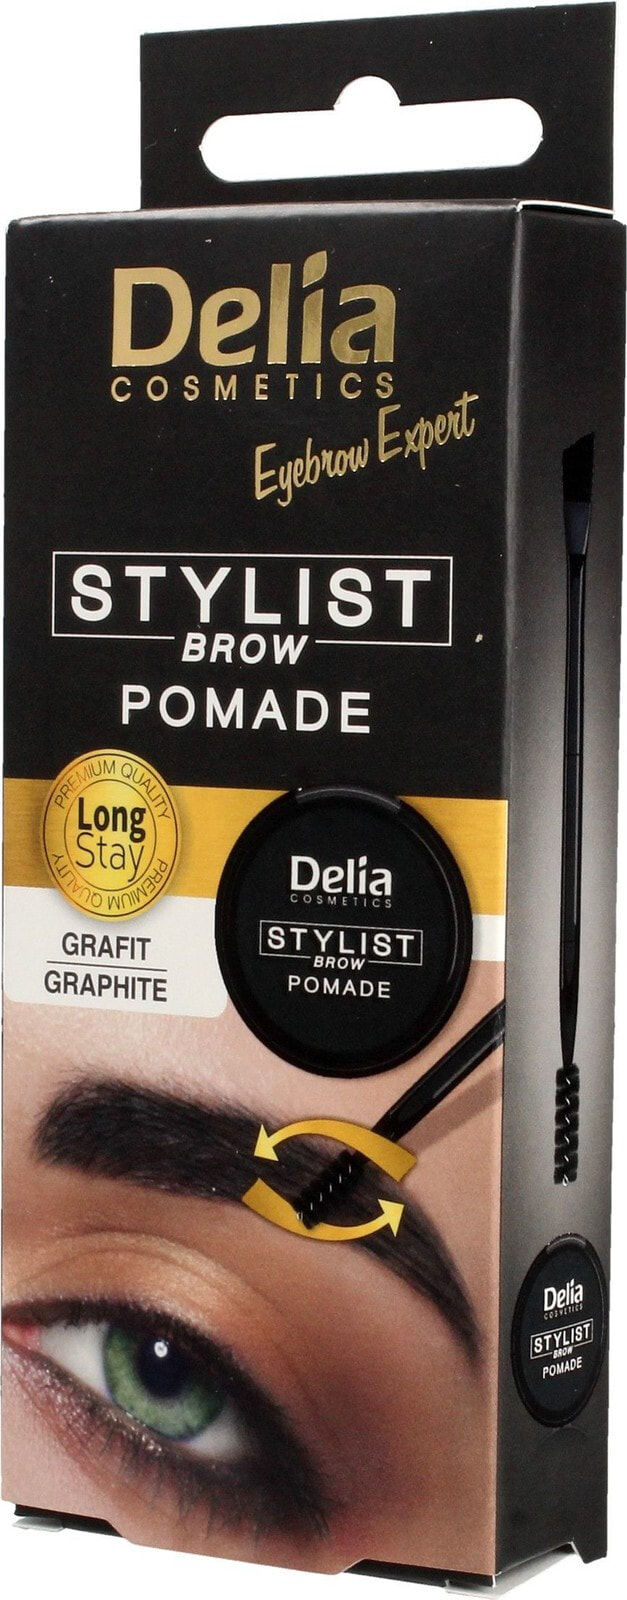 Delia Delia Cosmetics Eyebrow Expert Eyebrow pomade Graphite 1pc